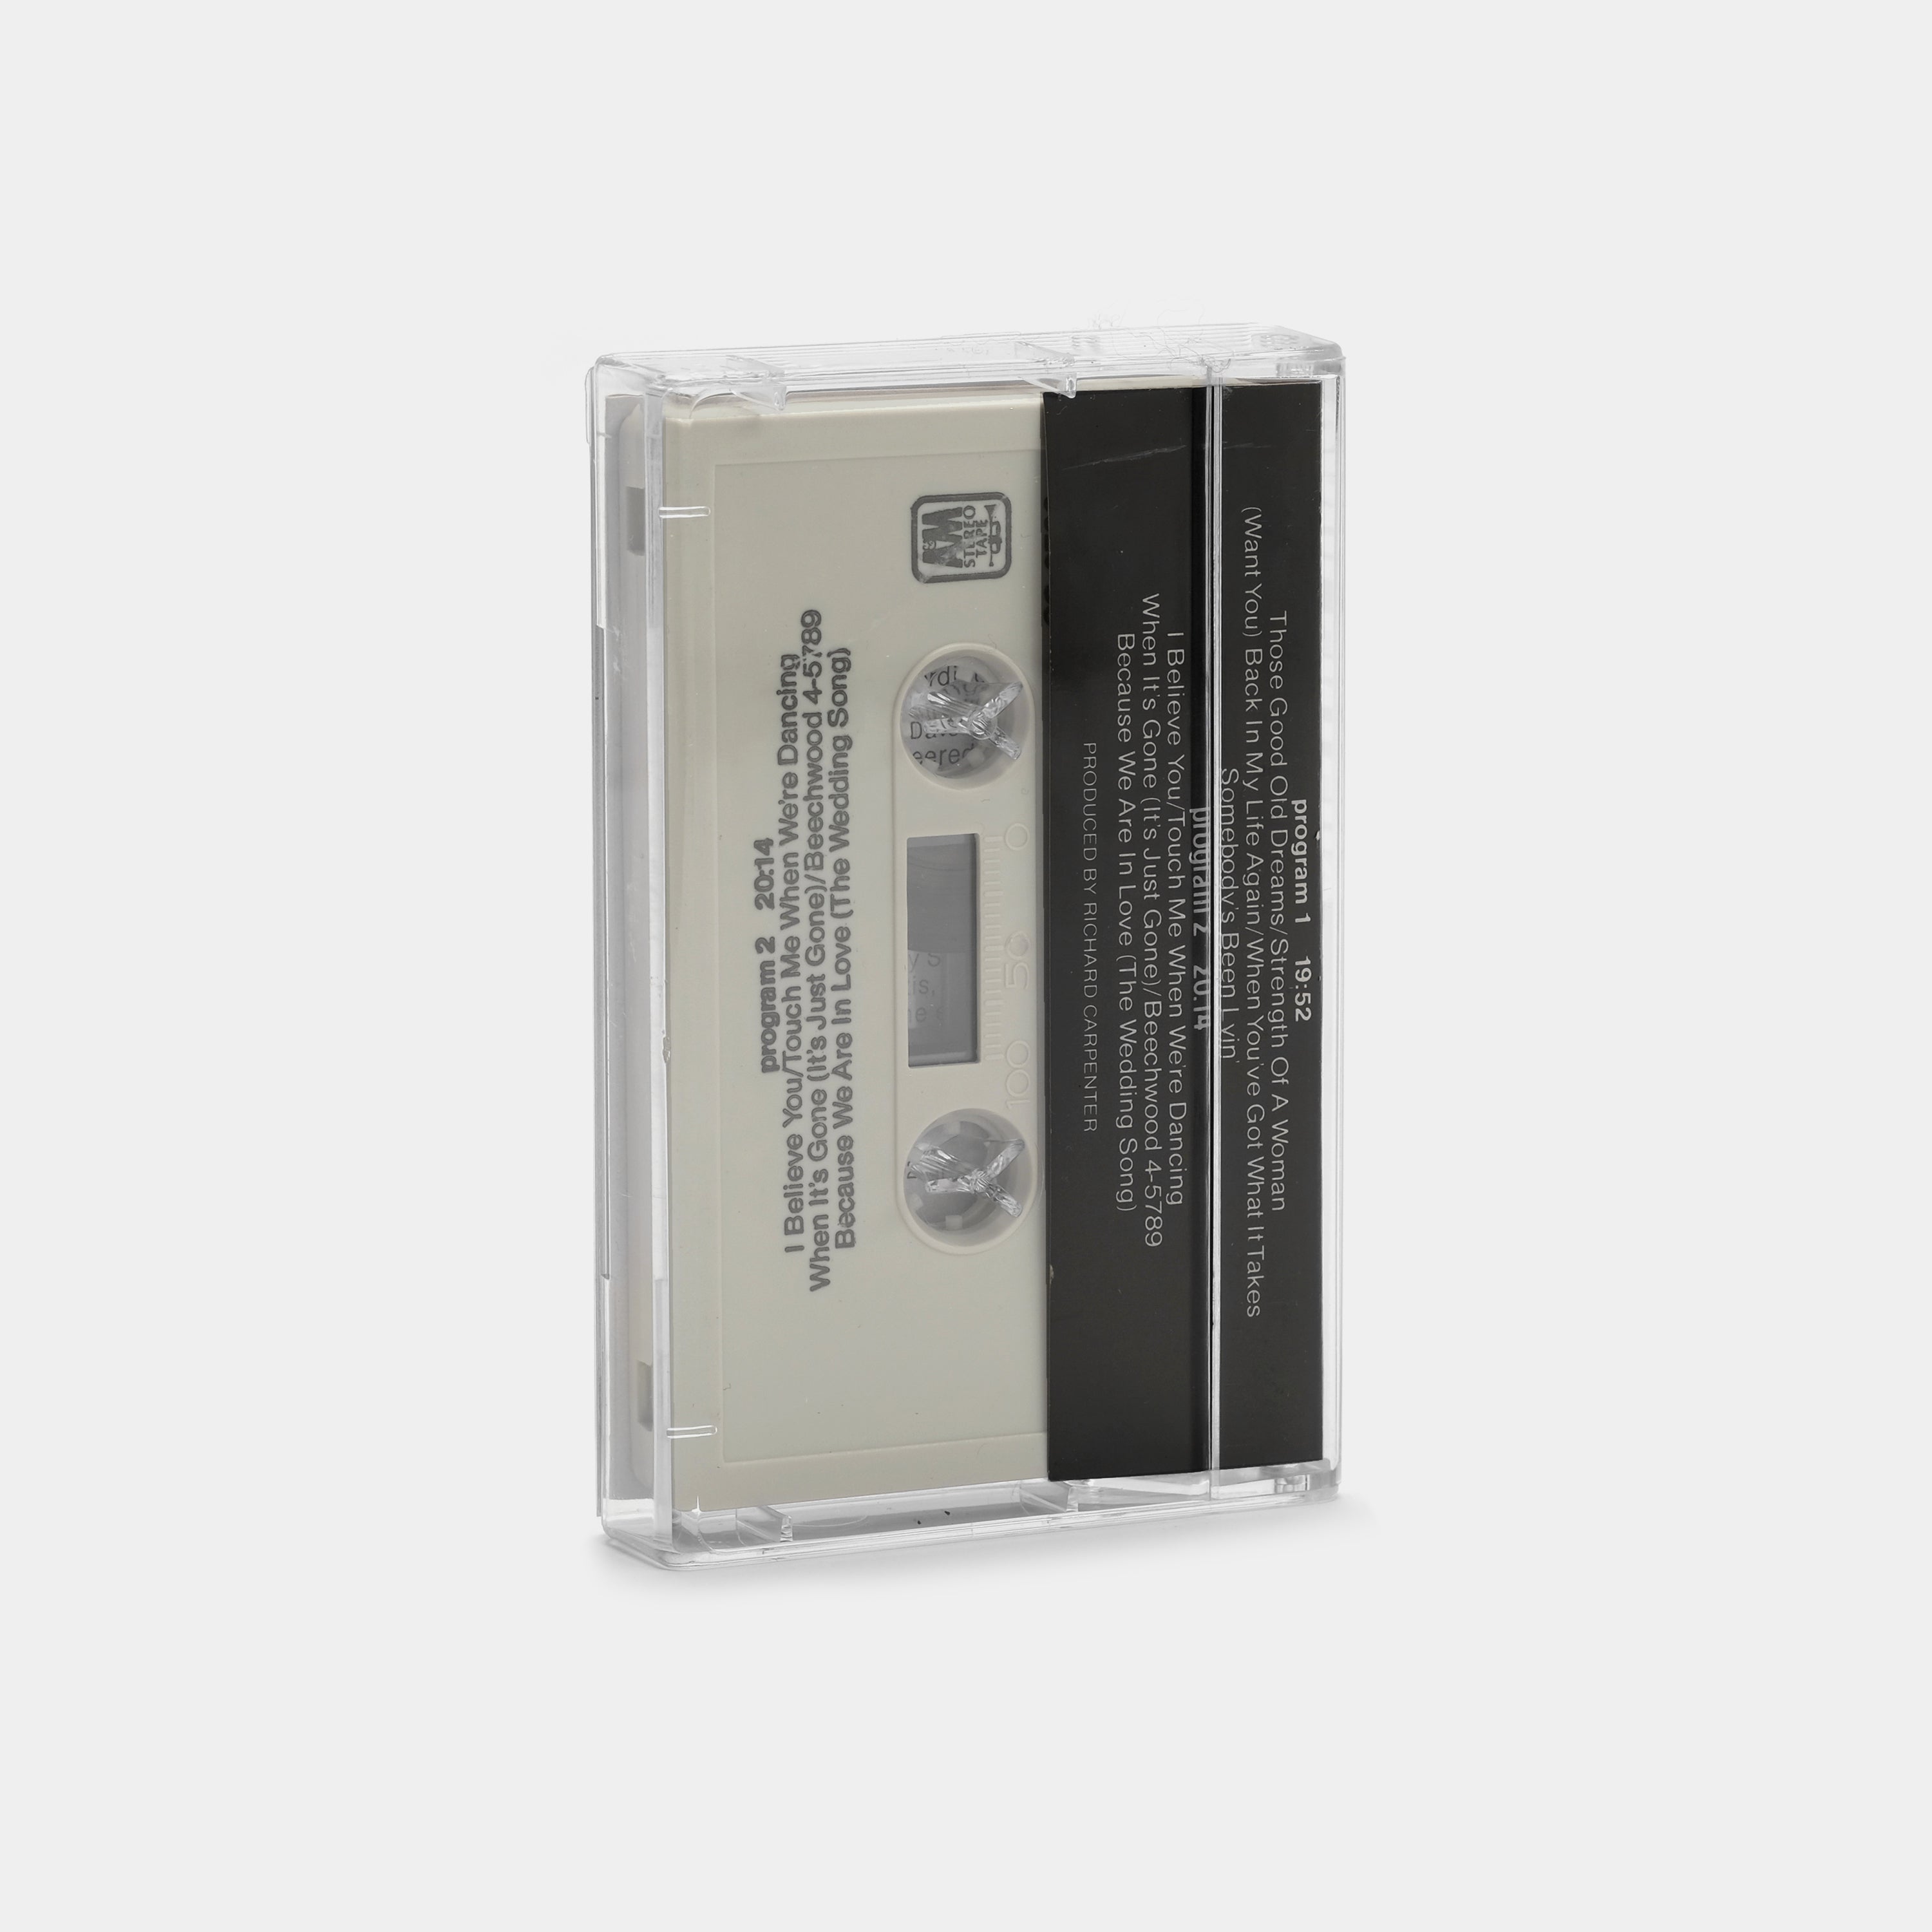 Carpenters - Made In America Cassette Tape